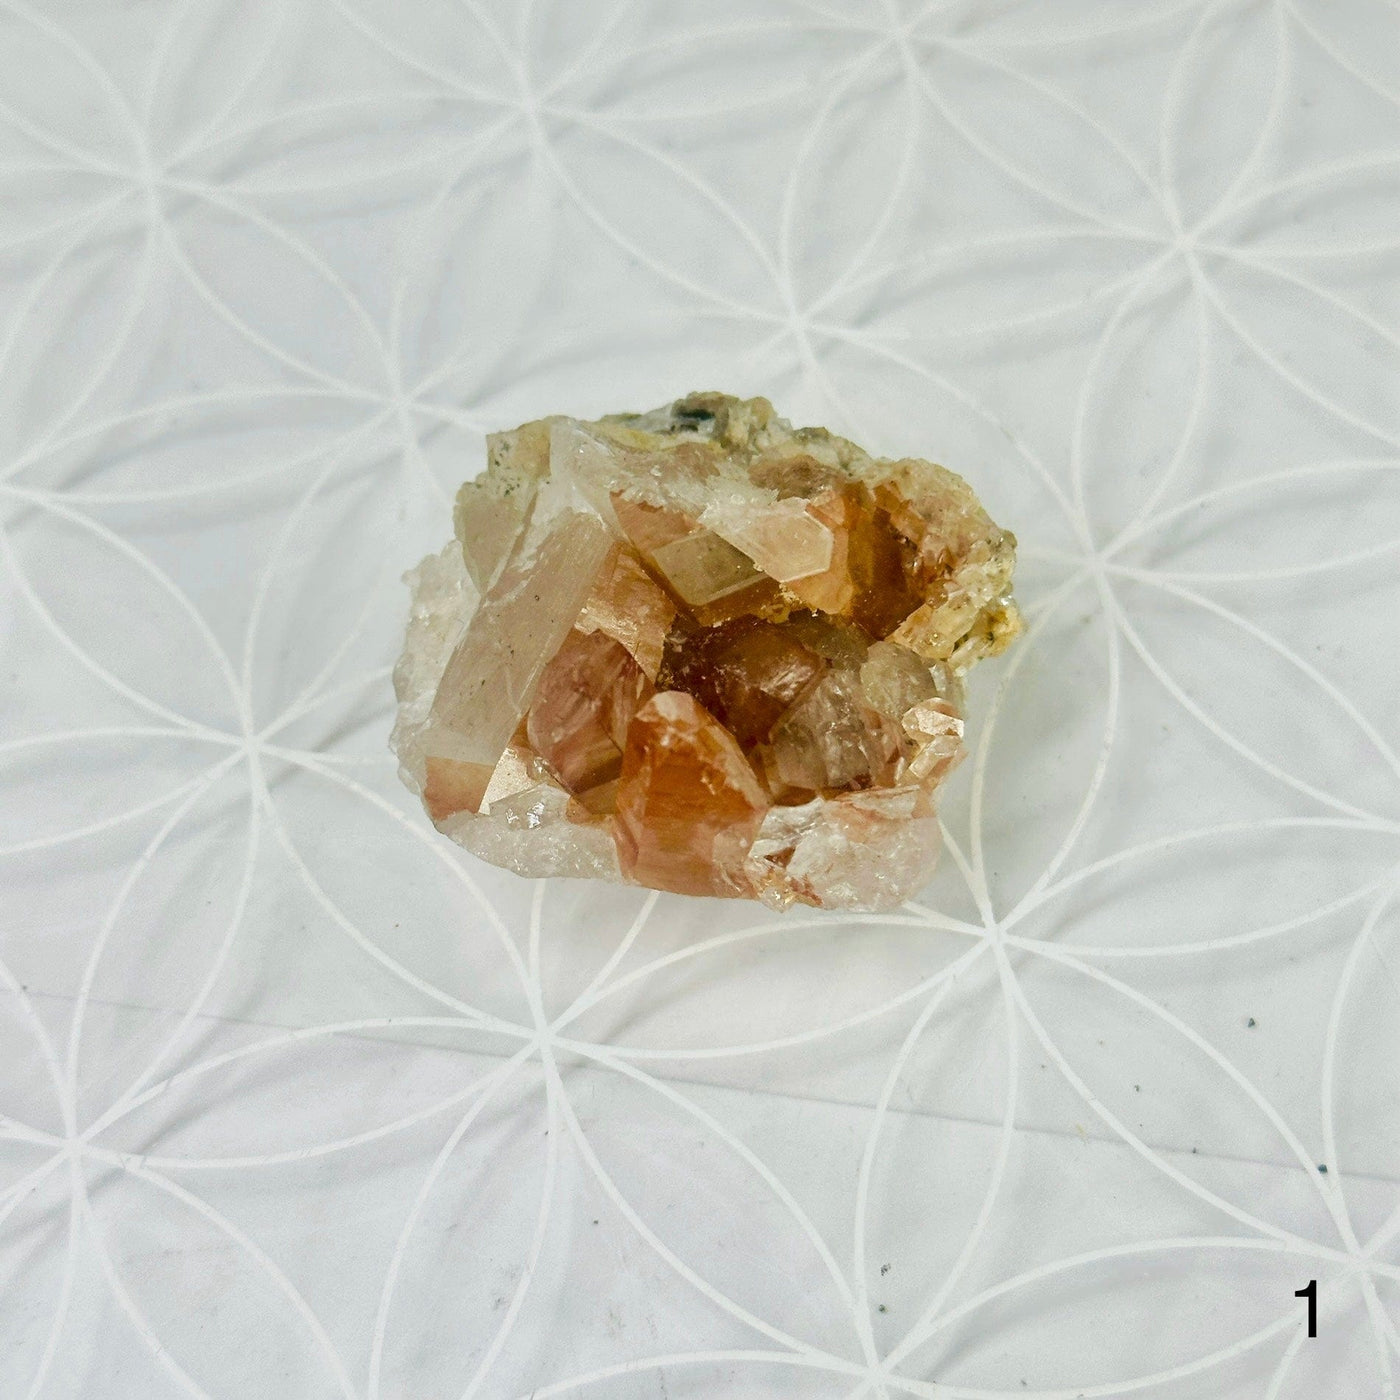 Tangerine Quartz Cluster - Crystal Cluster - YOU CHOOSE variant 1 labeled